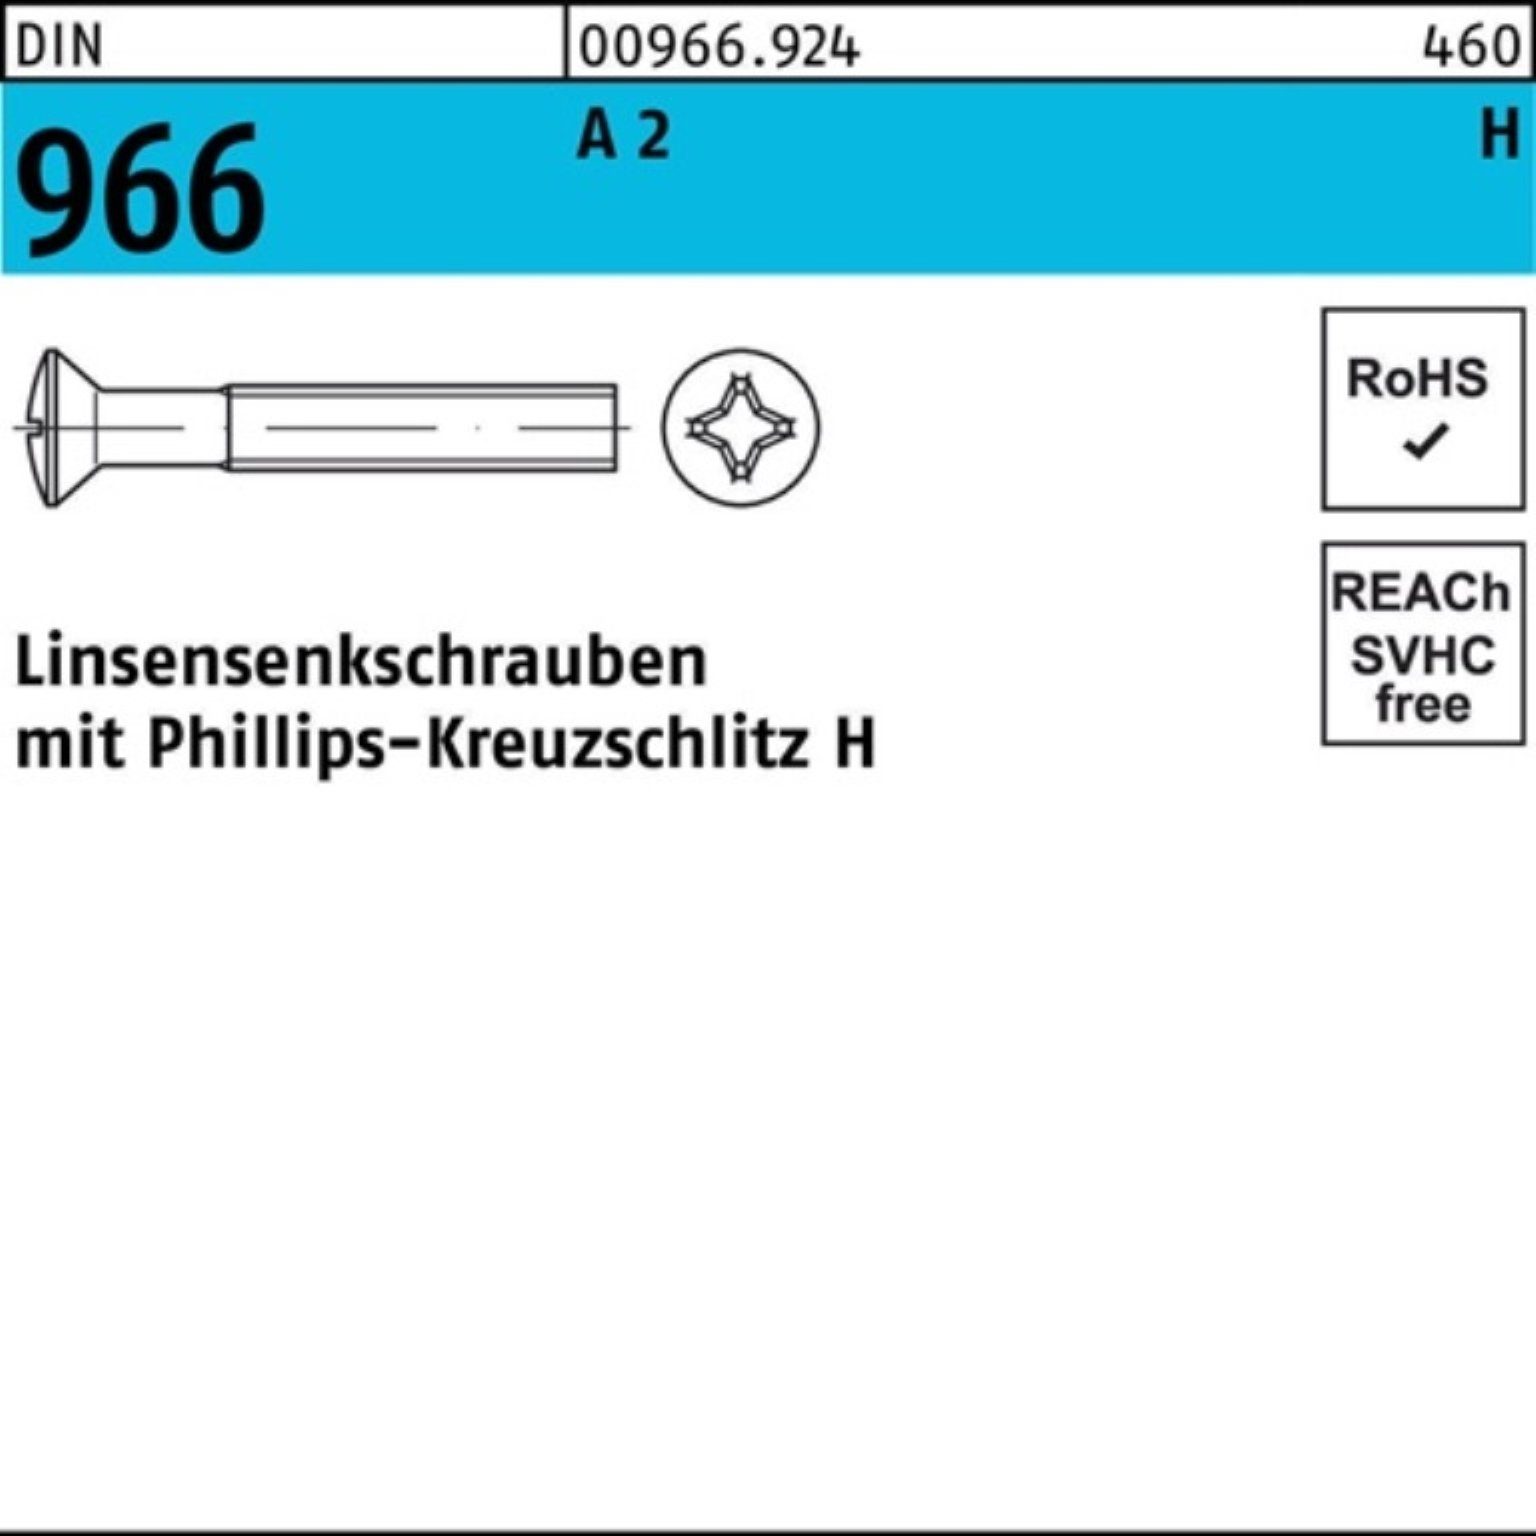 A 2 10 PH Reyher 1000er Linsenschraube Linsensenkschraube M4x 16-H Pack Kreuzschlitz 966 DIN